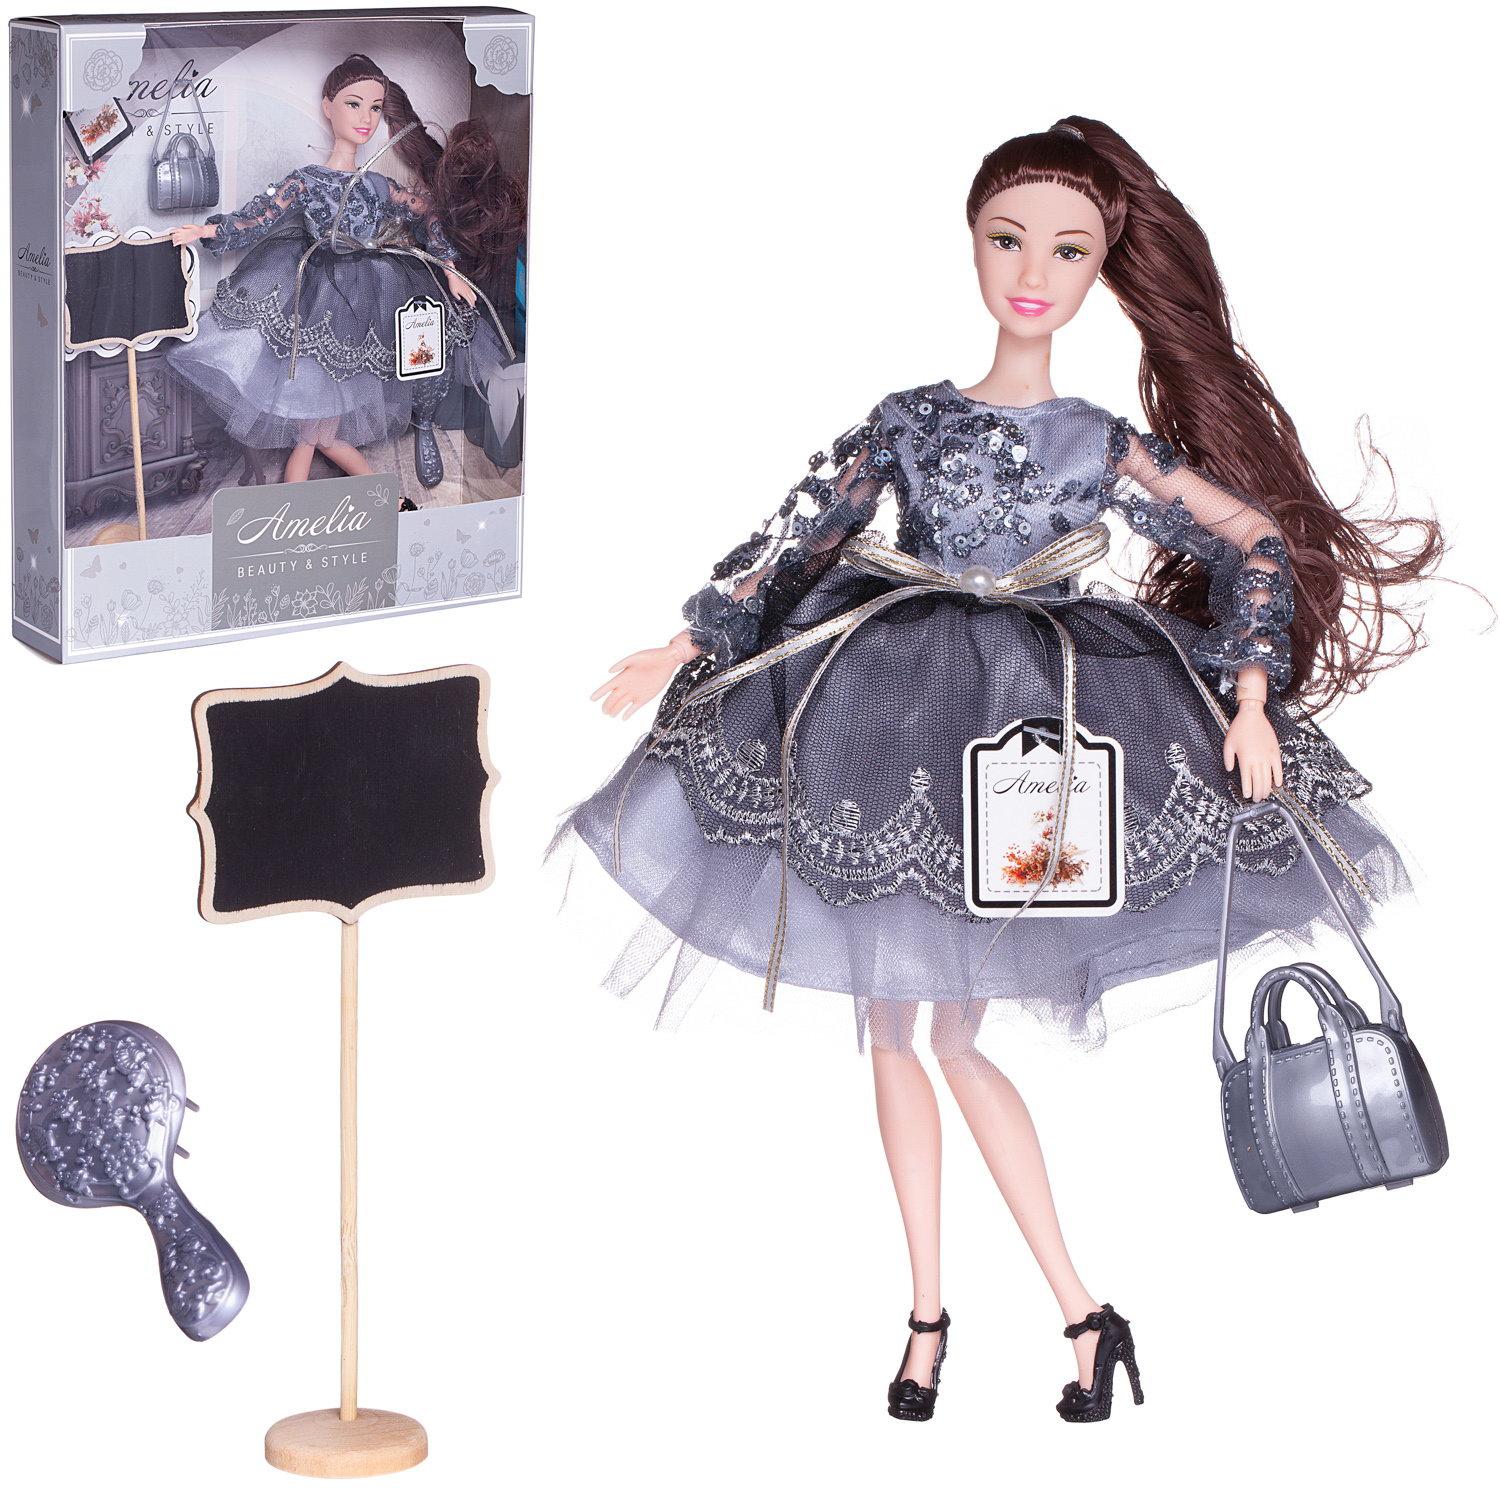 Кукла ABTOYS Роскошь серебра в платье с двухслойной юбкой серебристая сумка темные волосы 30см PT-01630 - фото 2